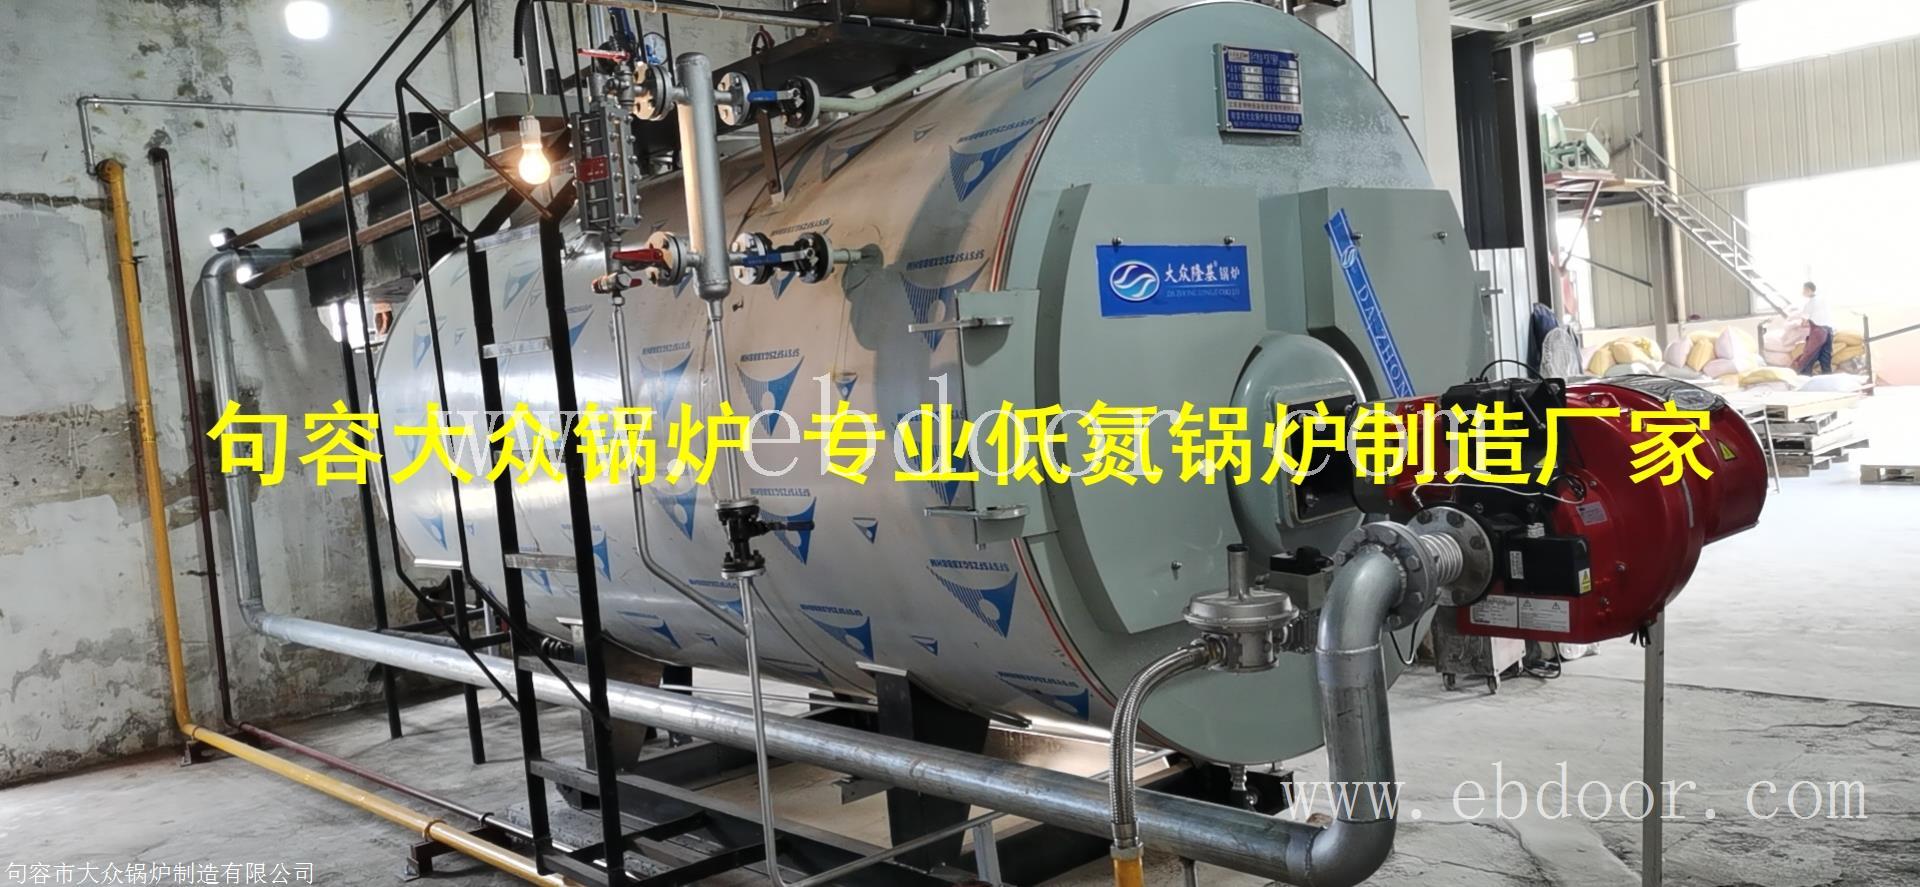 江苏天工工具锅炉低氮改造镇江无锡南通南京大众锅炉低氮改造